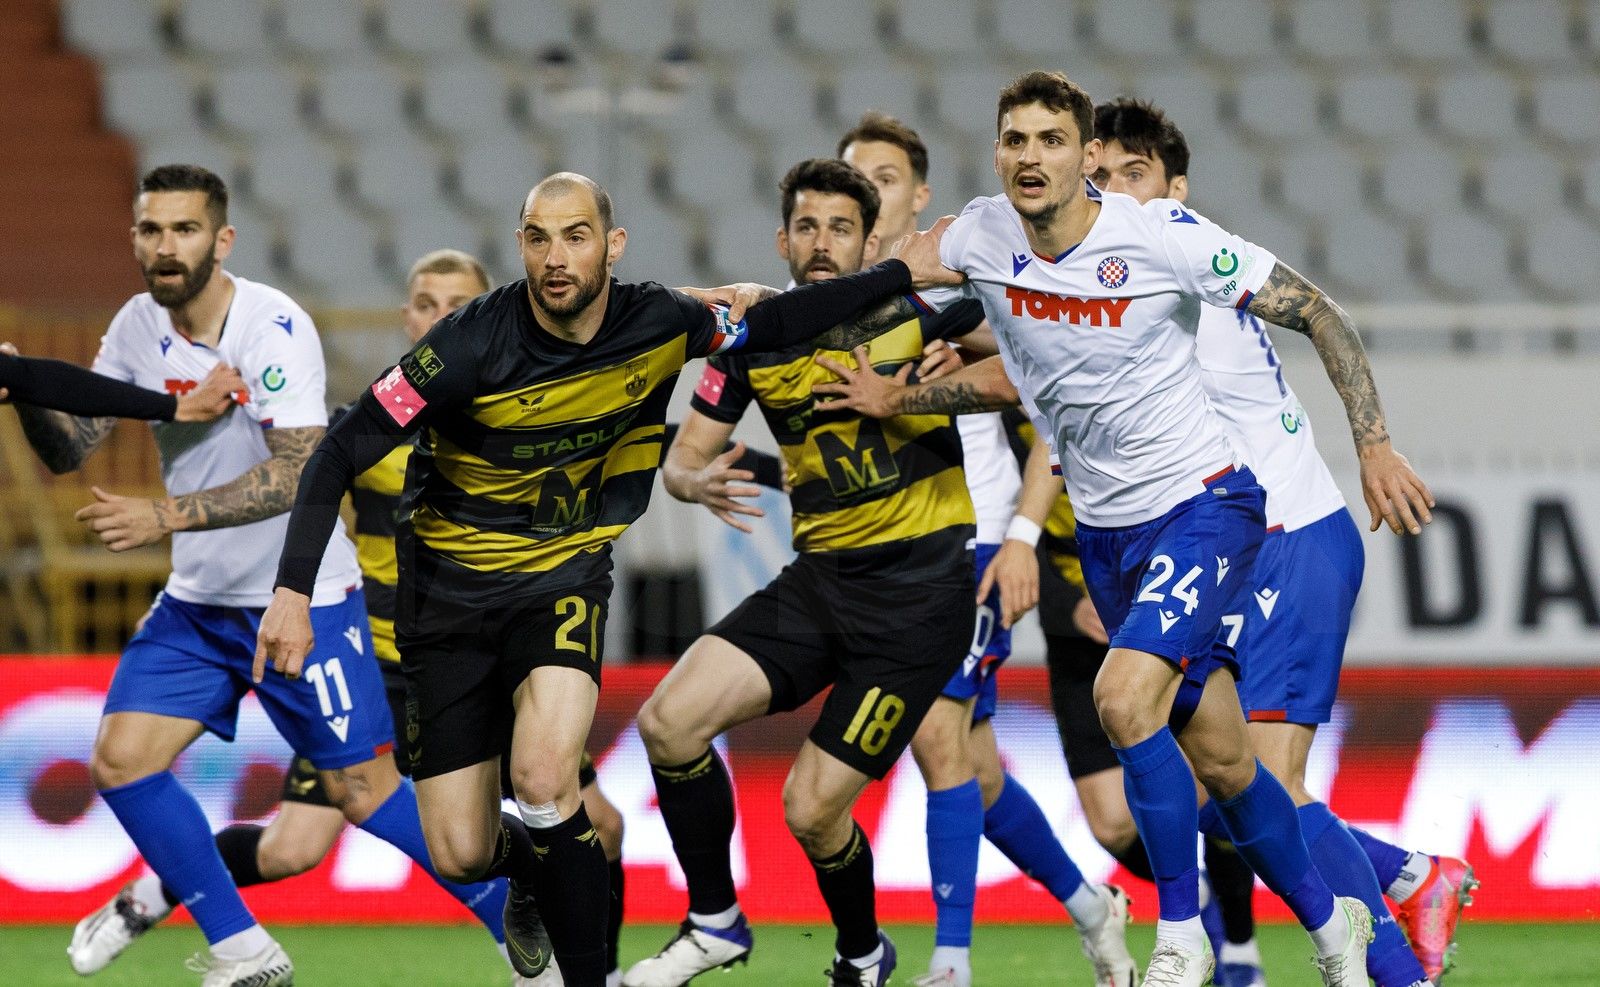 Hajduk Split vs Osijek Prediction, Betting Tips & Odds